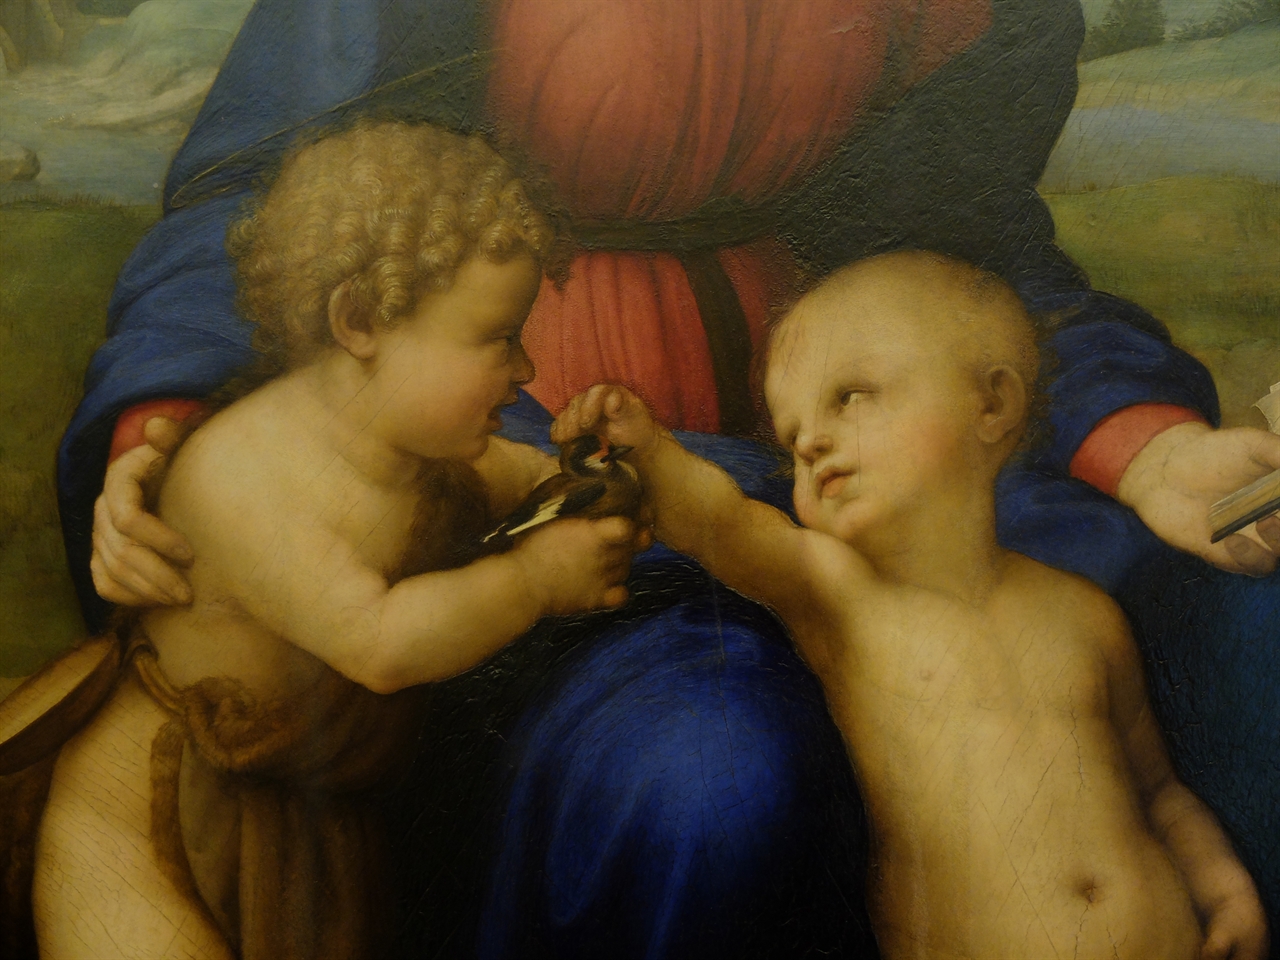 라파엘로, '방울새의 성모'(부분), 피렌체 우피치미술관. 아기 세례 요한이 건네고 있는 방울새는 앞으로 닥칠 예수의 수난을 상징하는 새입니다. 두 아기의 천진한 표정과 대비되어 비극성을 강조하죠.